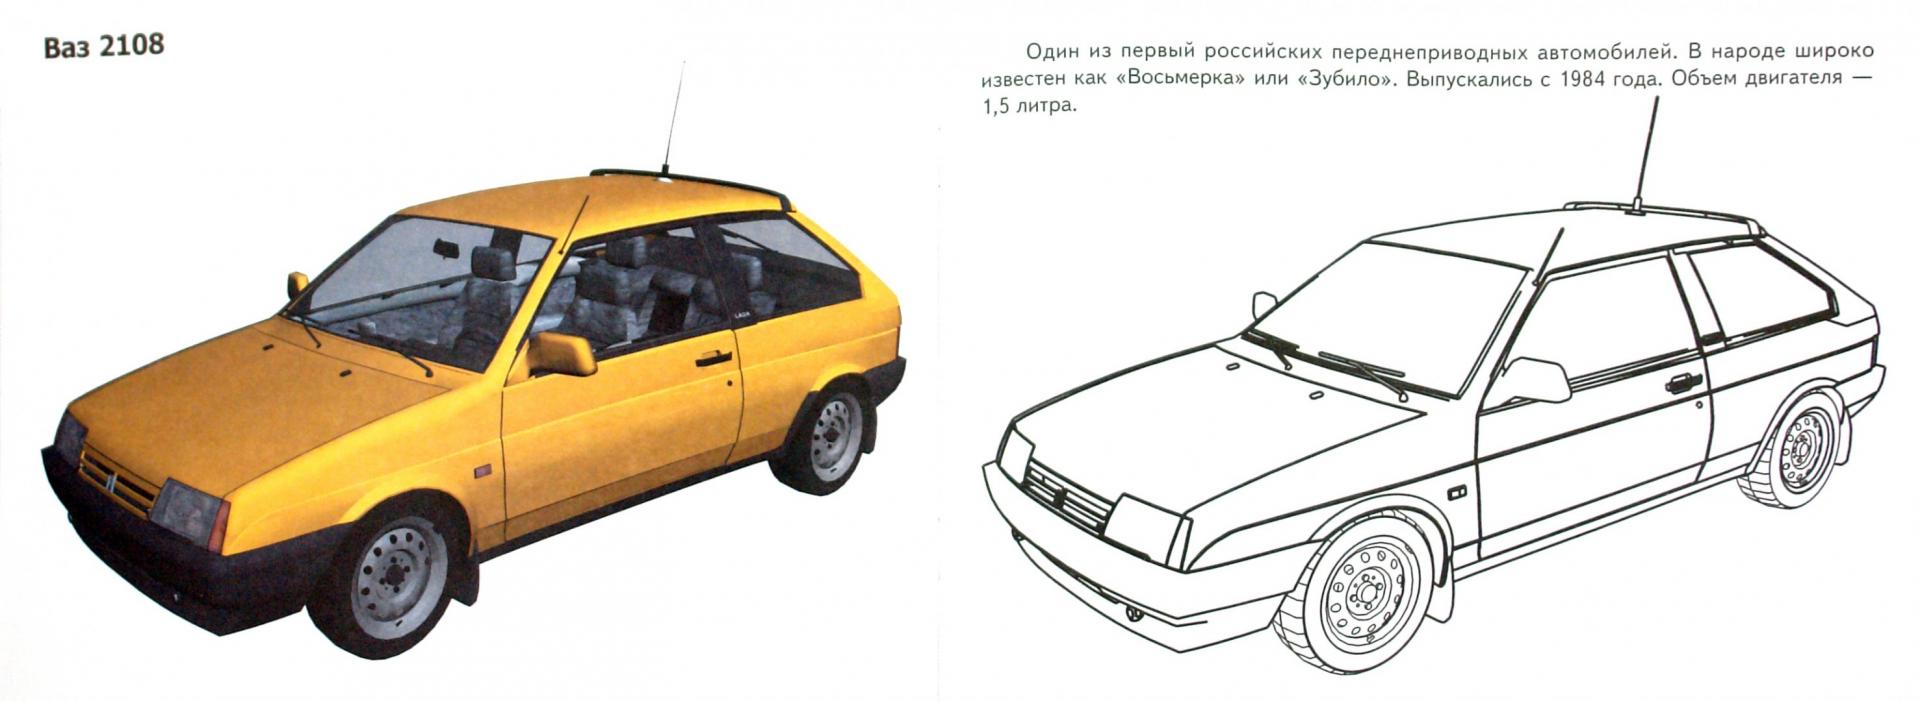 Иллюстрация 1 из 15 для Автомобили-модели мира. Россия | Лабиринт - книги. Источник: Лабиринт